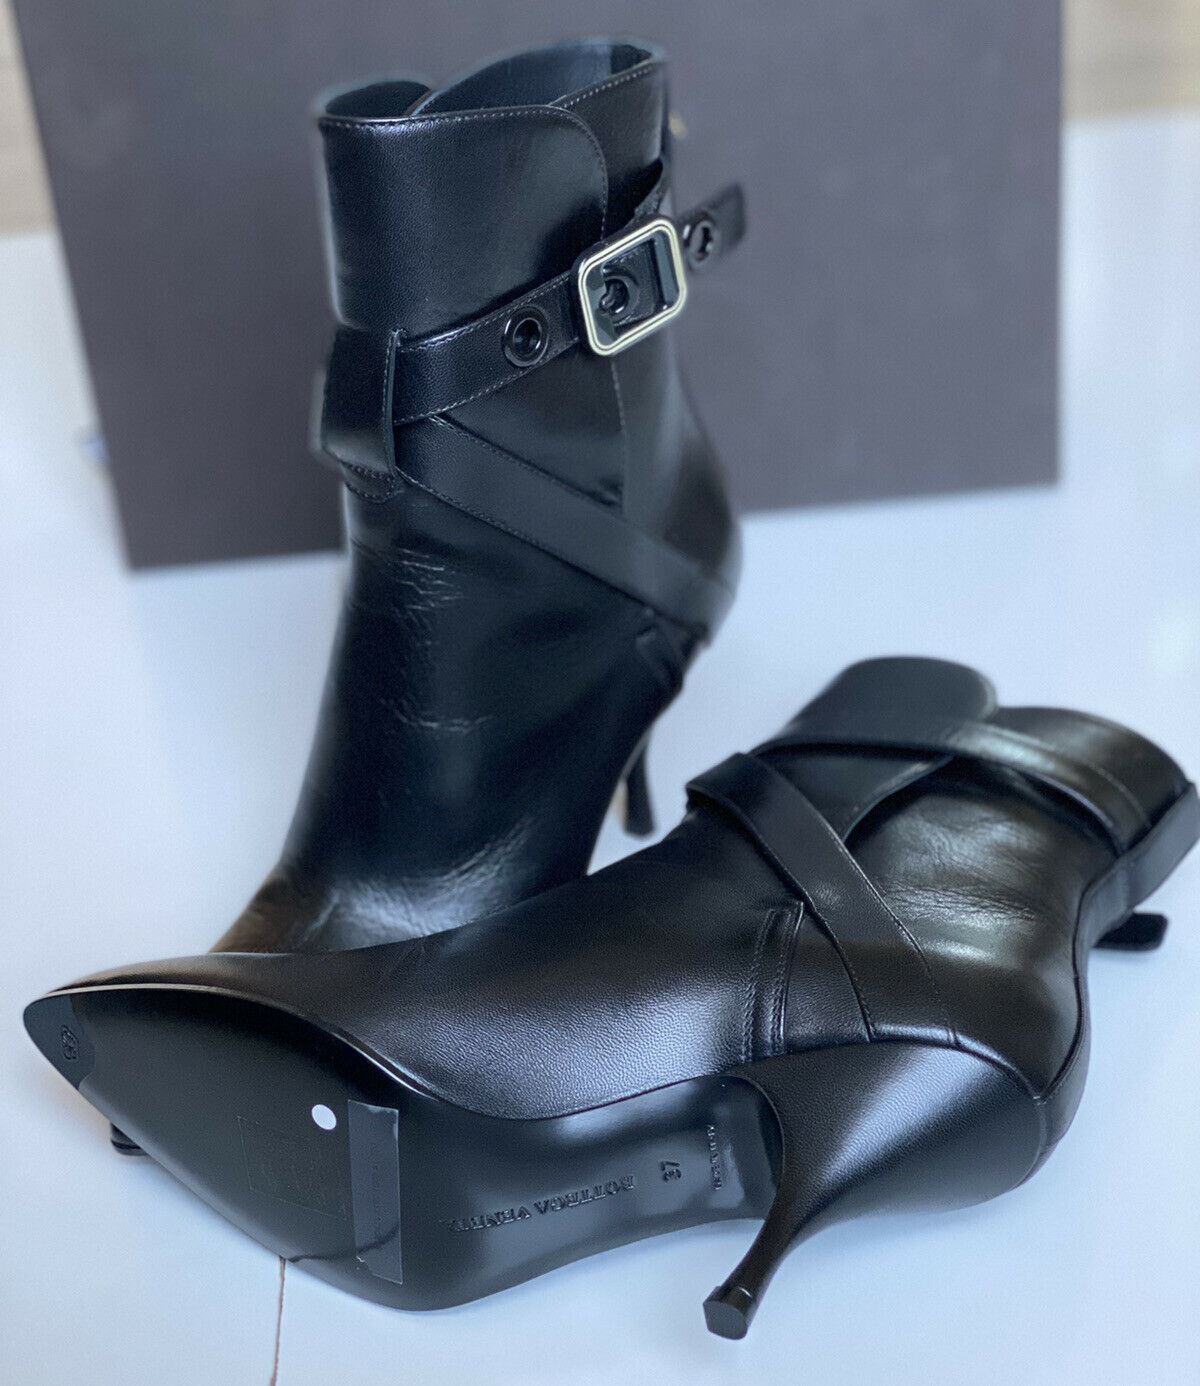 NIB $1120 Bottega Veneta Black Soft Leather Knee Height Boots 7 US (37 Euro) IT